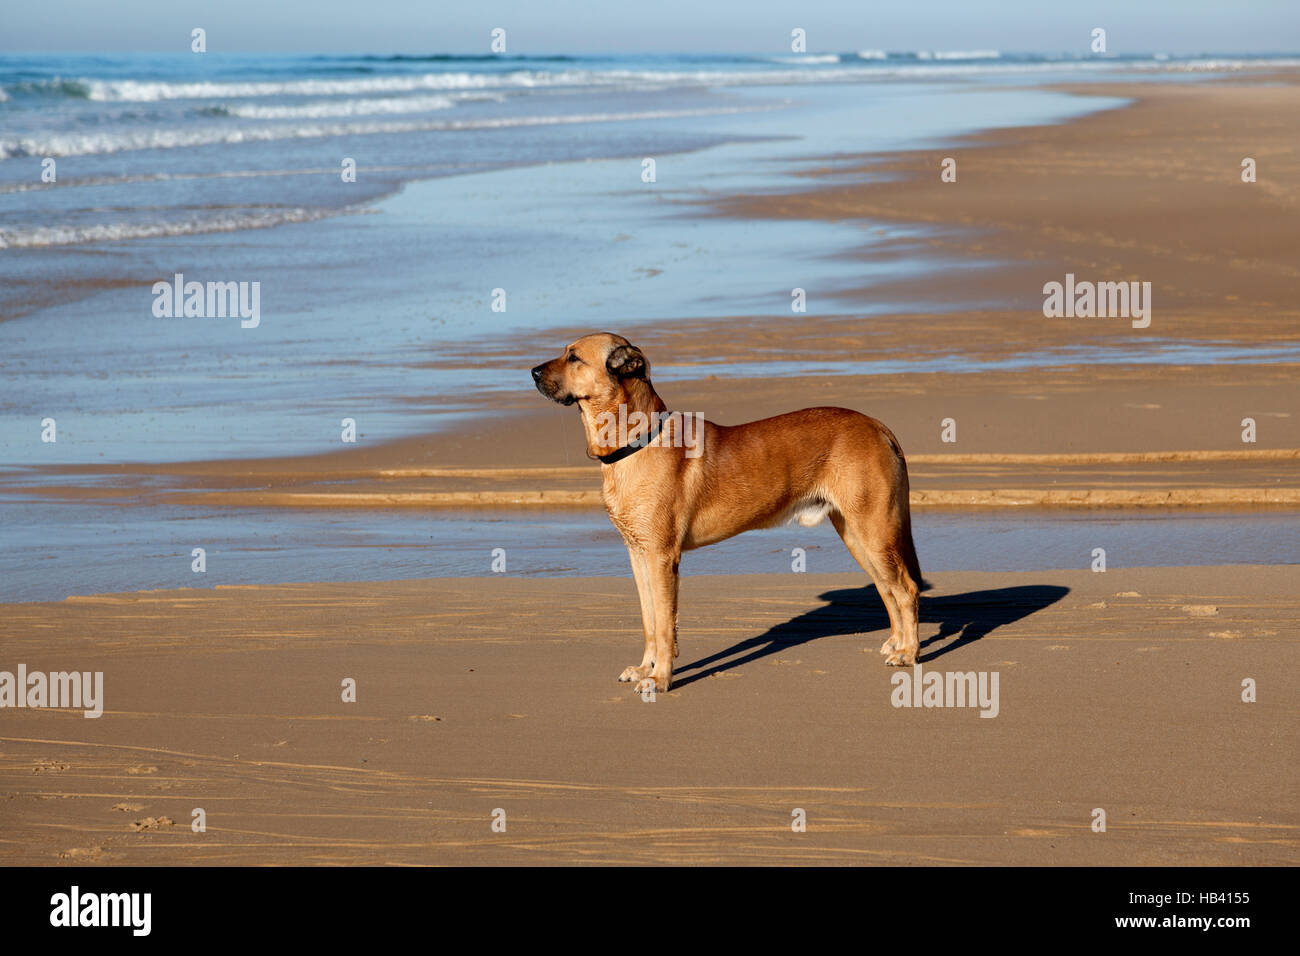 Un fidèle chien attend son maître sur la plage : la formation d'un surfer à la mer (Hossegor - France). Chien fidèle accompagnateur son maître sur la plage : Banque D'Images